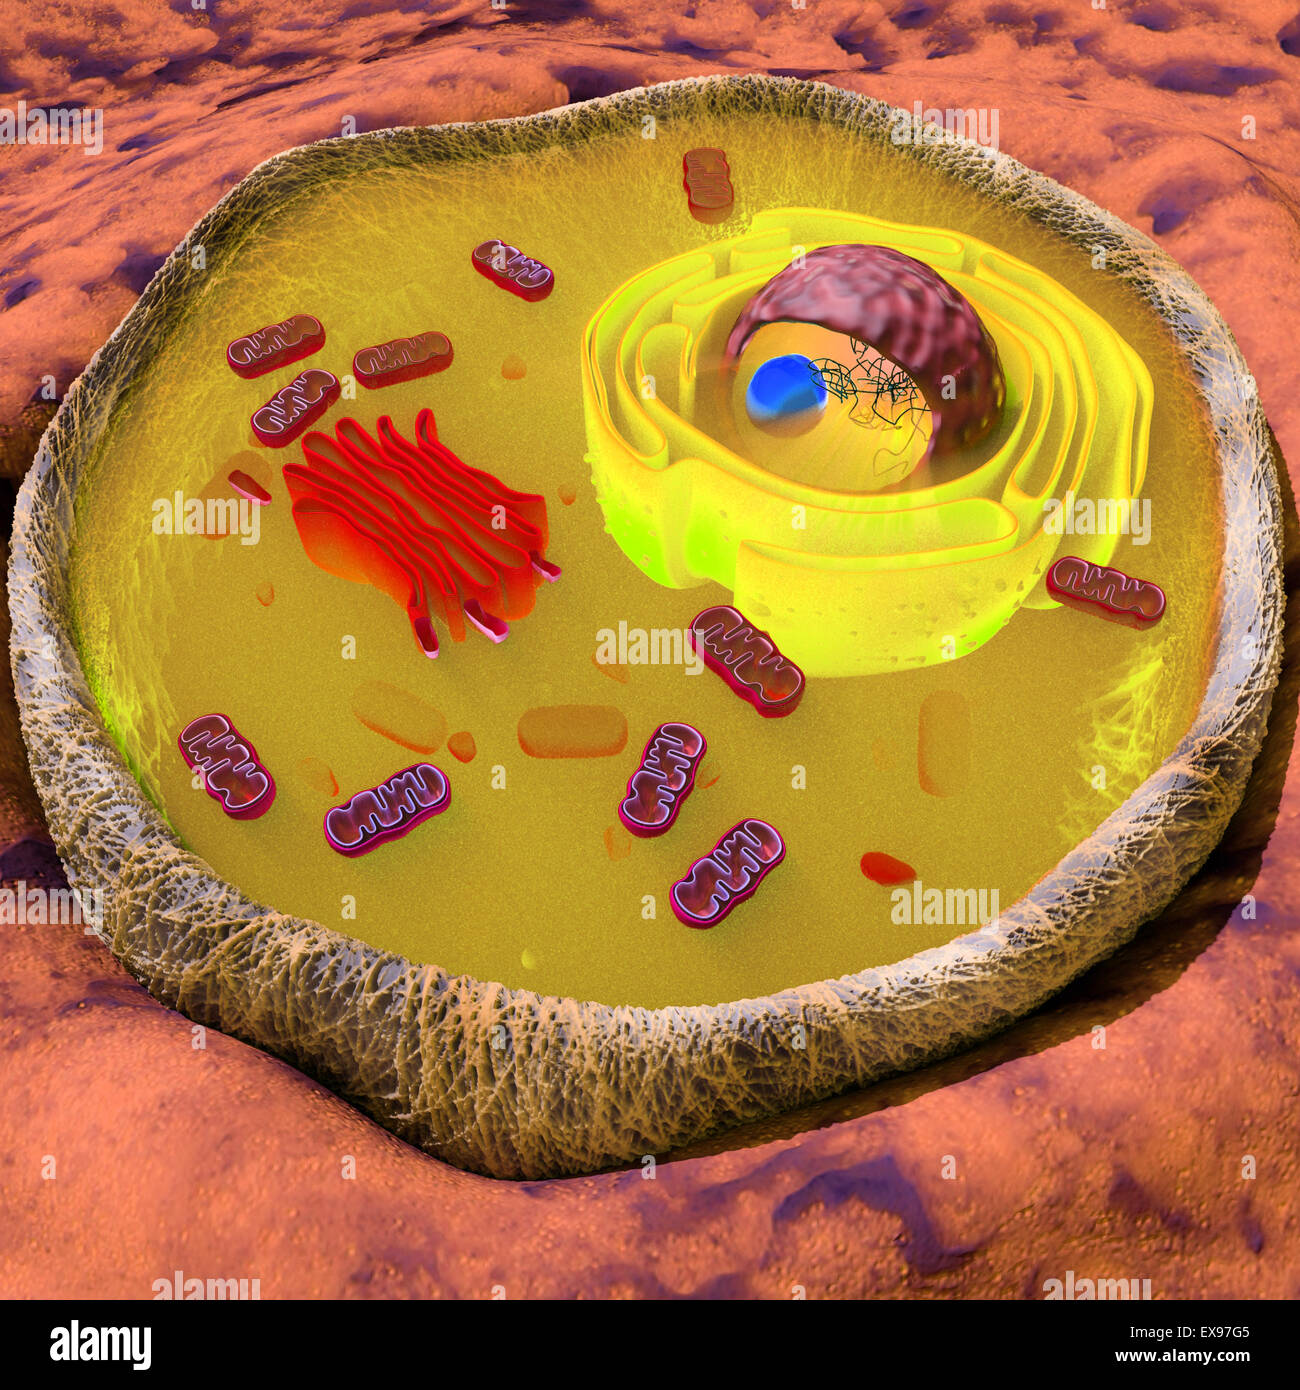 Ilustración 3D de una célula humana o animal en la sección transversal Foto de stock